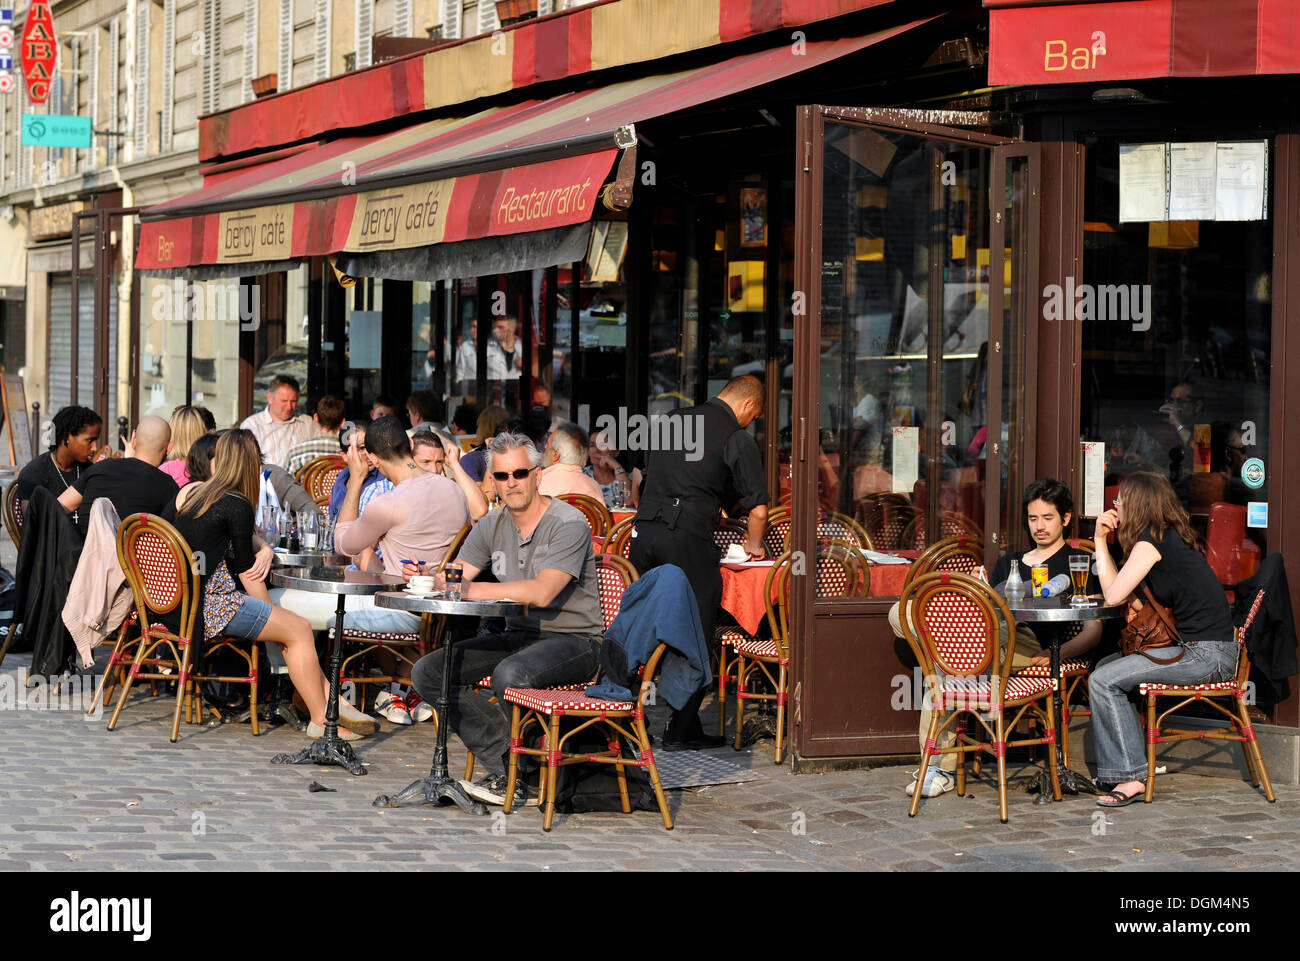 Straßencafé oder Straßencafé, Brasserie, Bercy, Paris, Frankreich Stockfoto